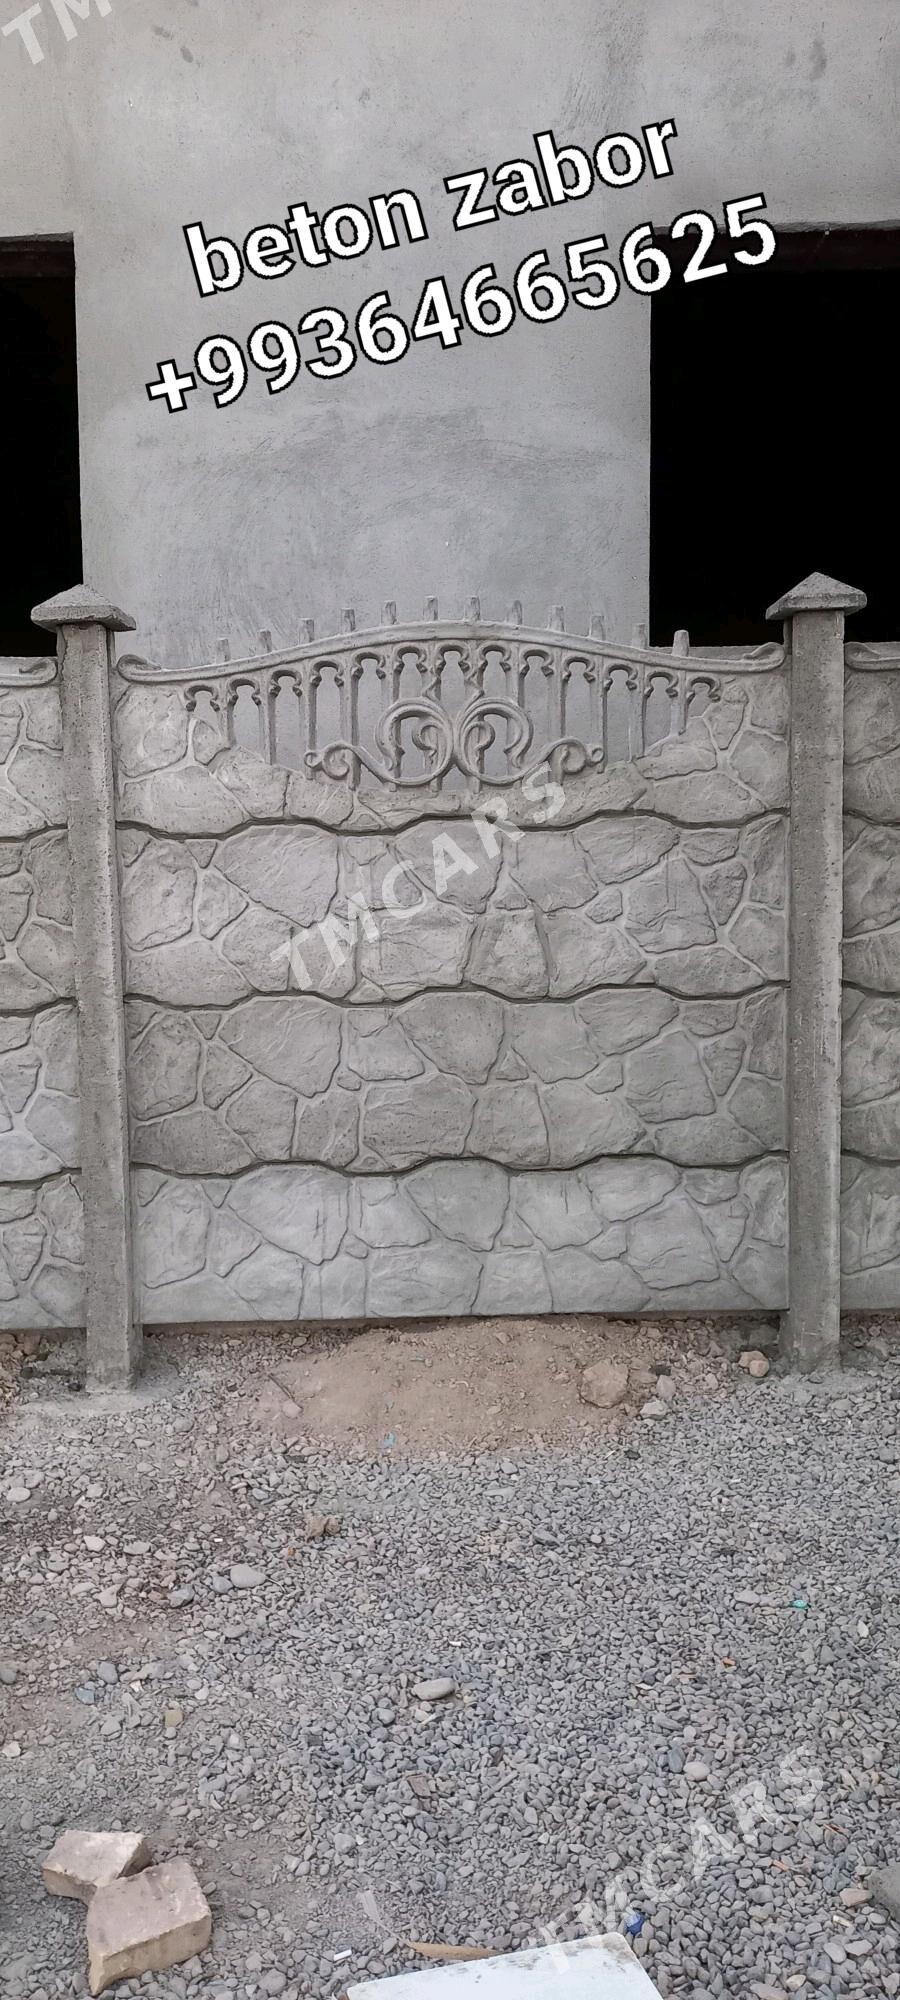 beton zabor - Сакарчага - img 2